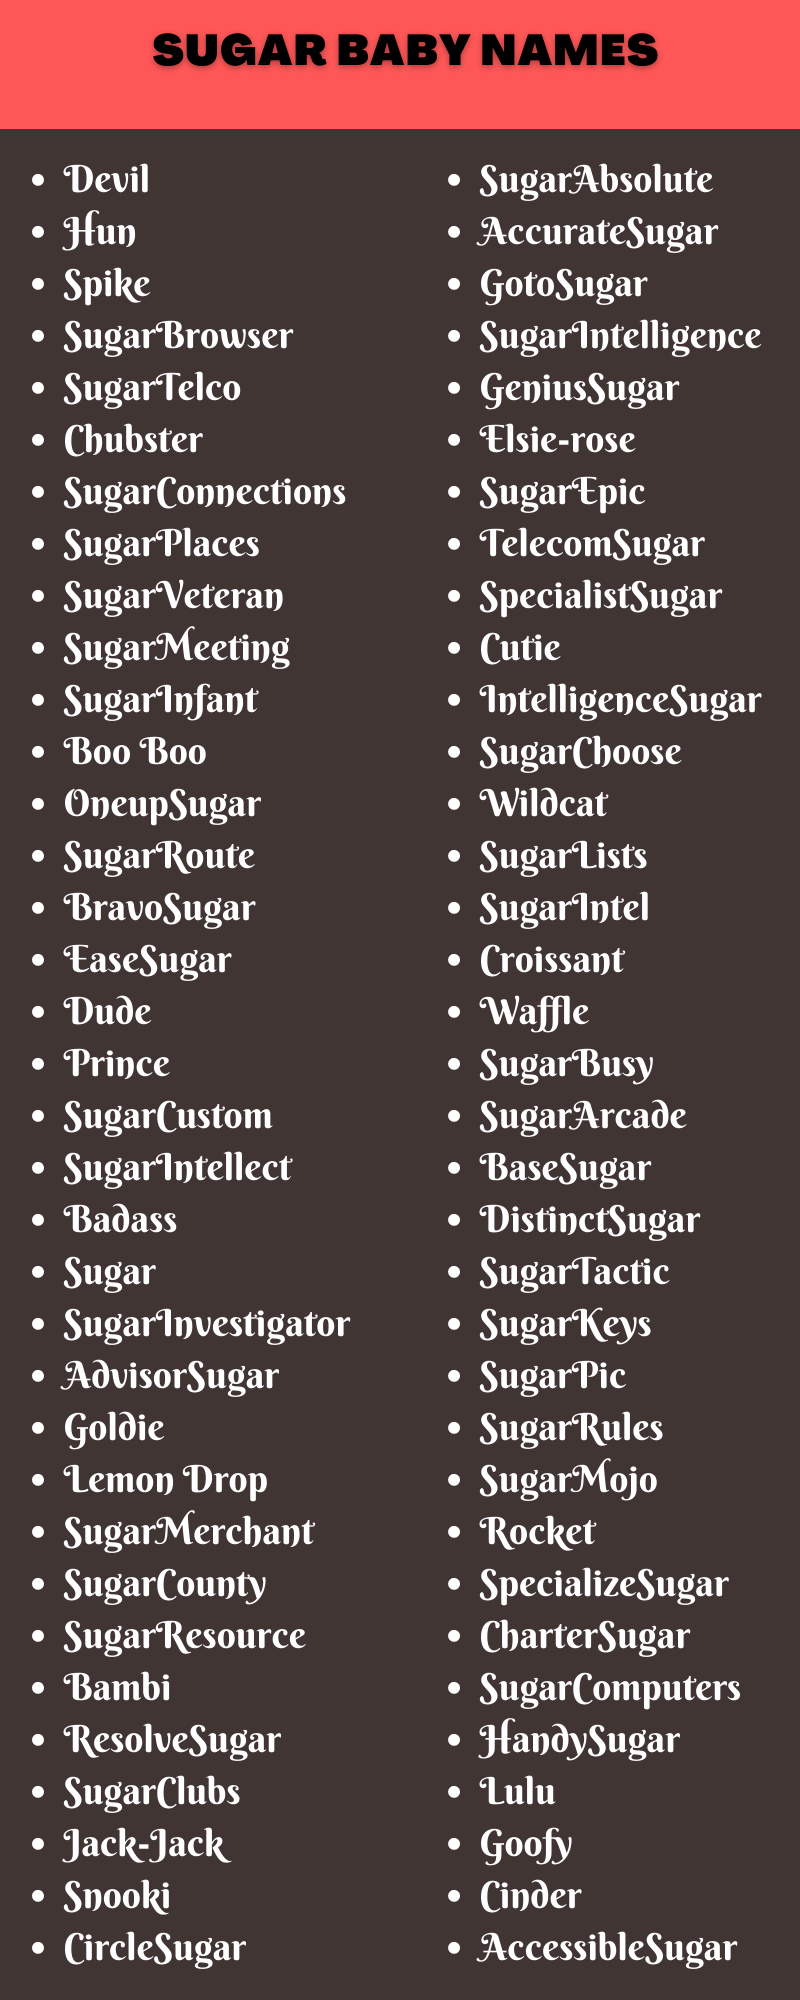 Sugar Baby Names